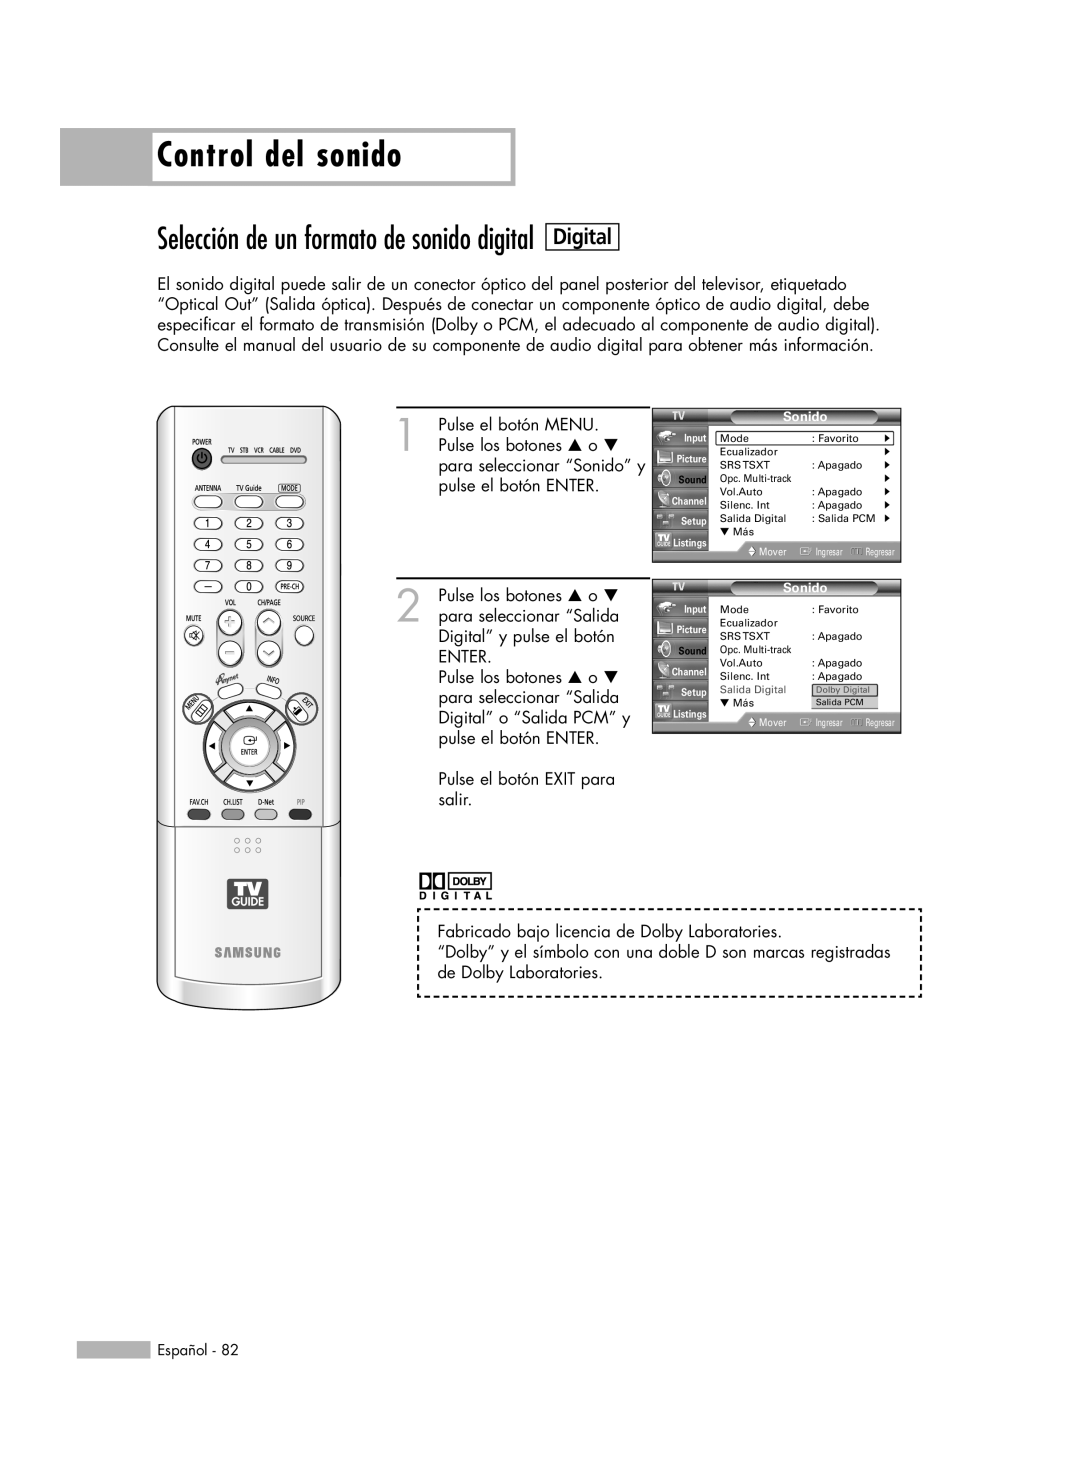 Samsung HL-R5678W manual Control del sonido, Digital, Selección de un formato de sonido digital, Pulse el botón MENU, Enter 